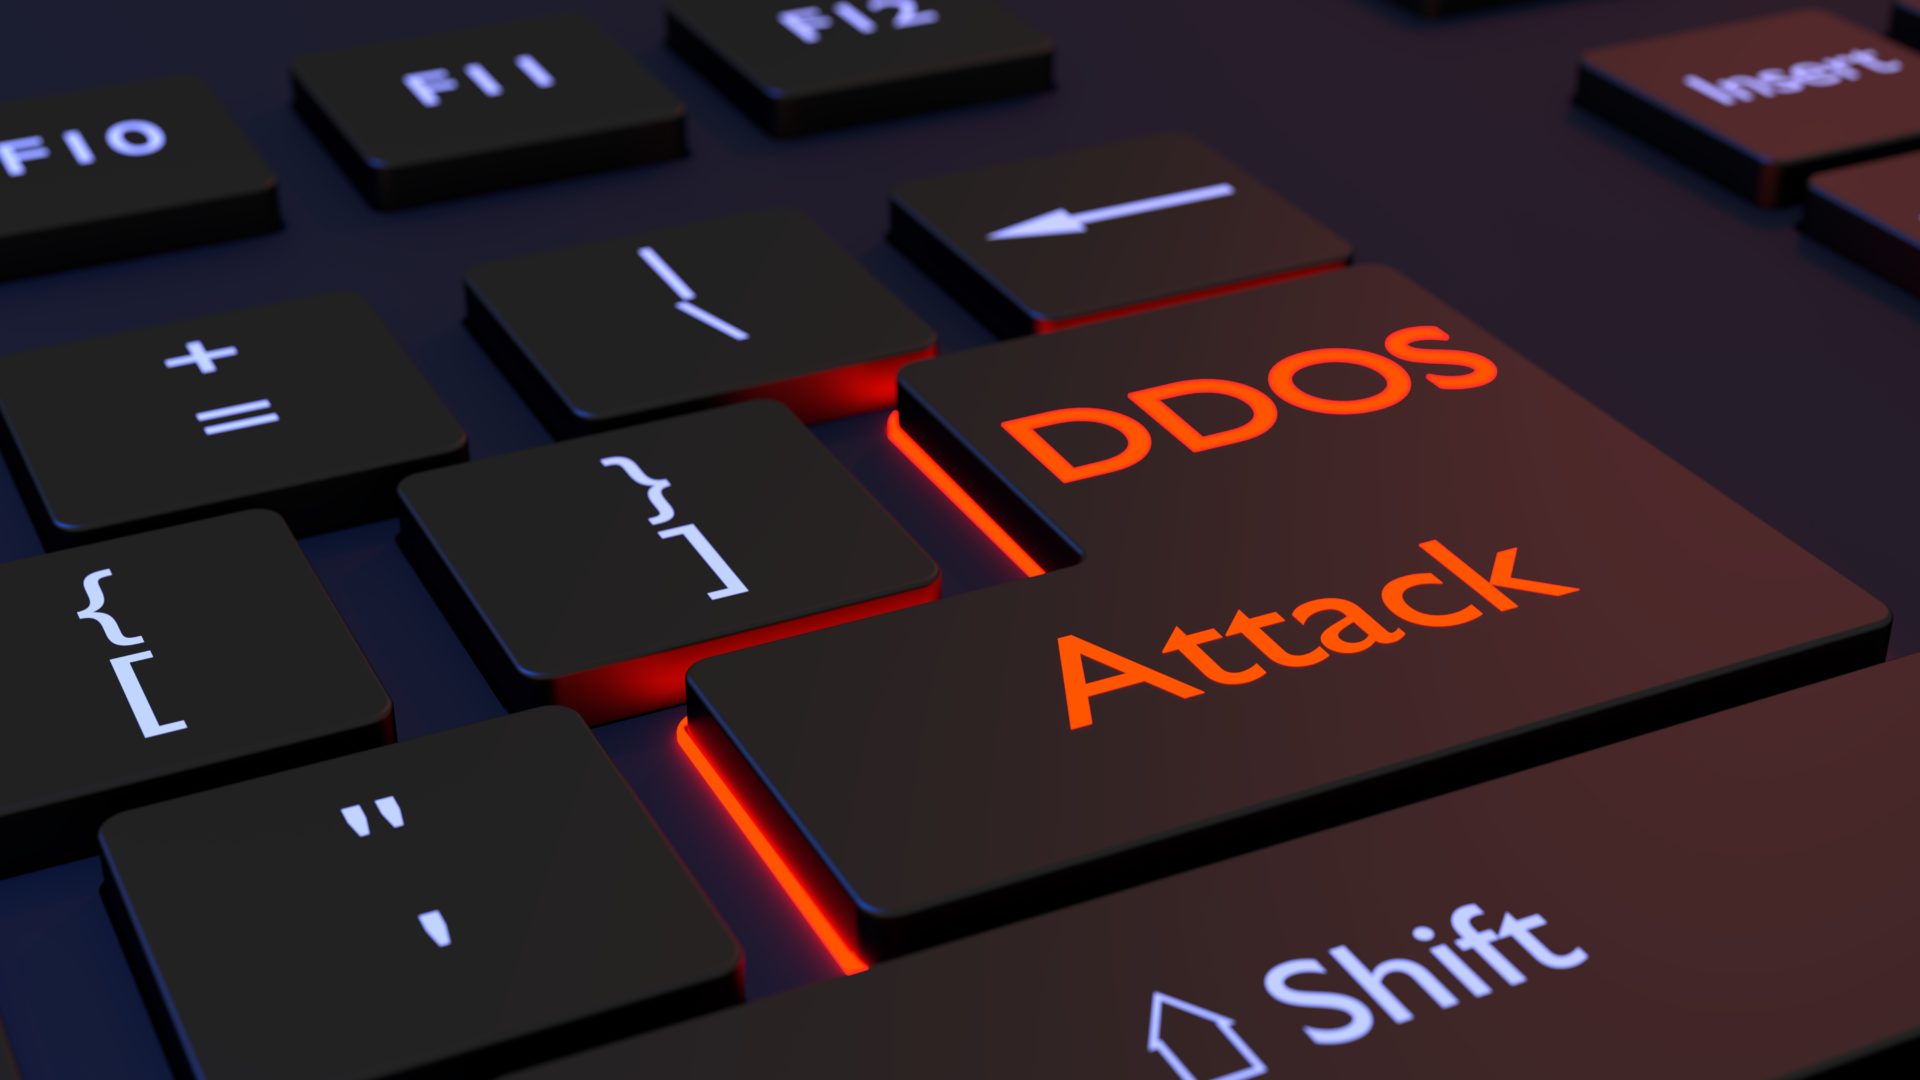 DDoS-angrep er en av de vanligste cyberangreptruslene